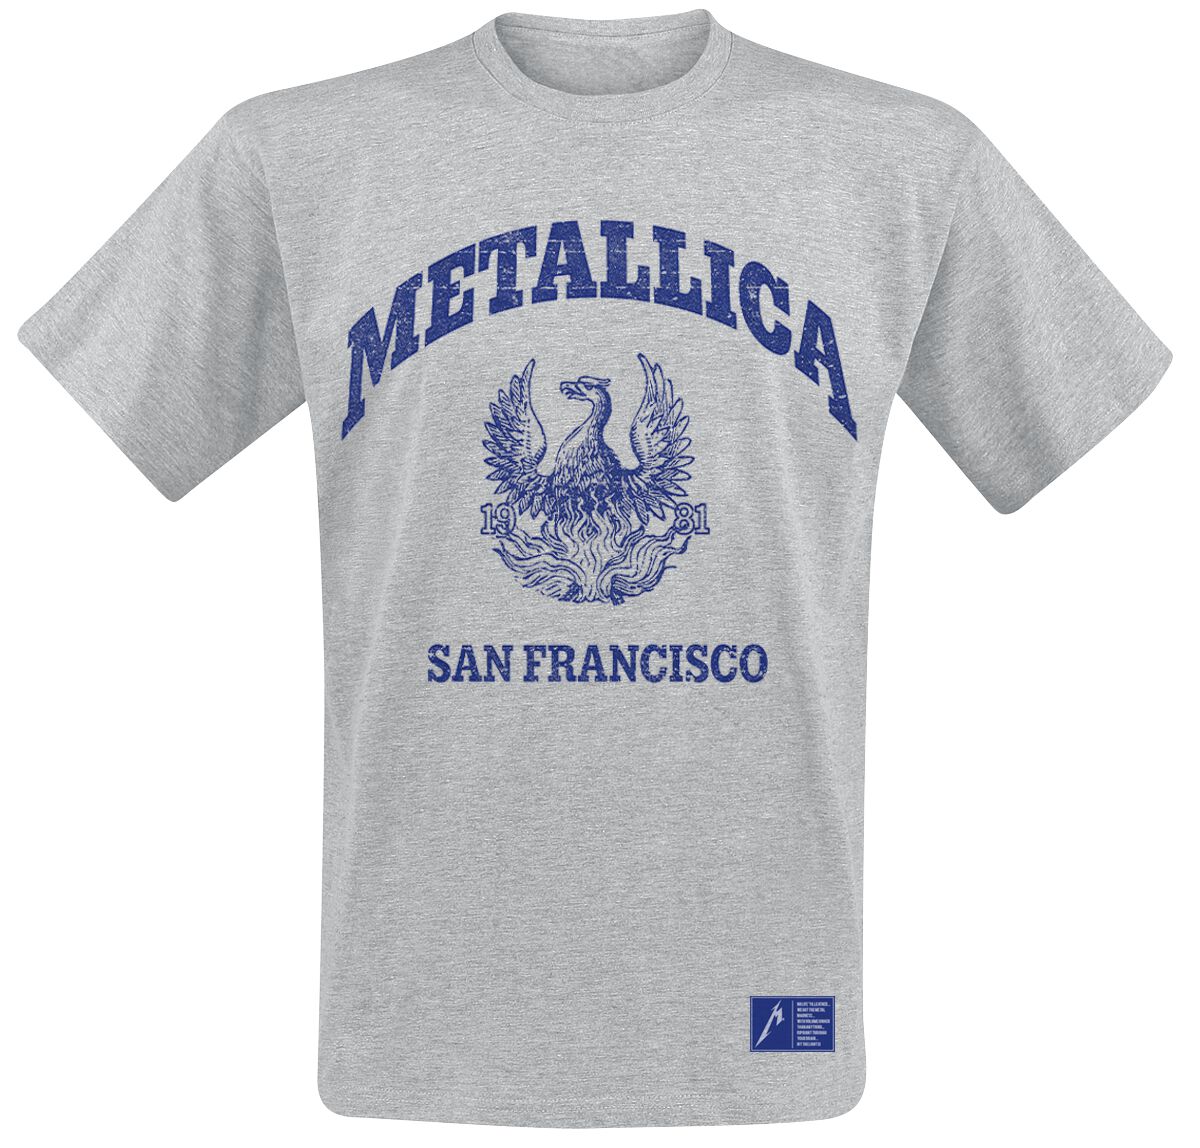 Metallica T-Shirt - College Crest - S bis XXL - für Männer - Größe S - grau  - Lizenziertes Merchandise!